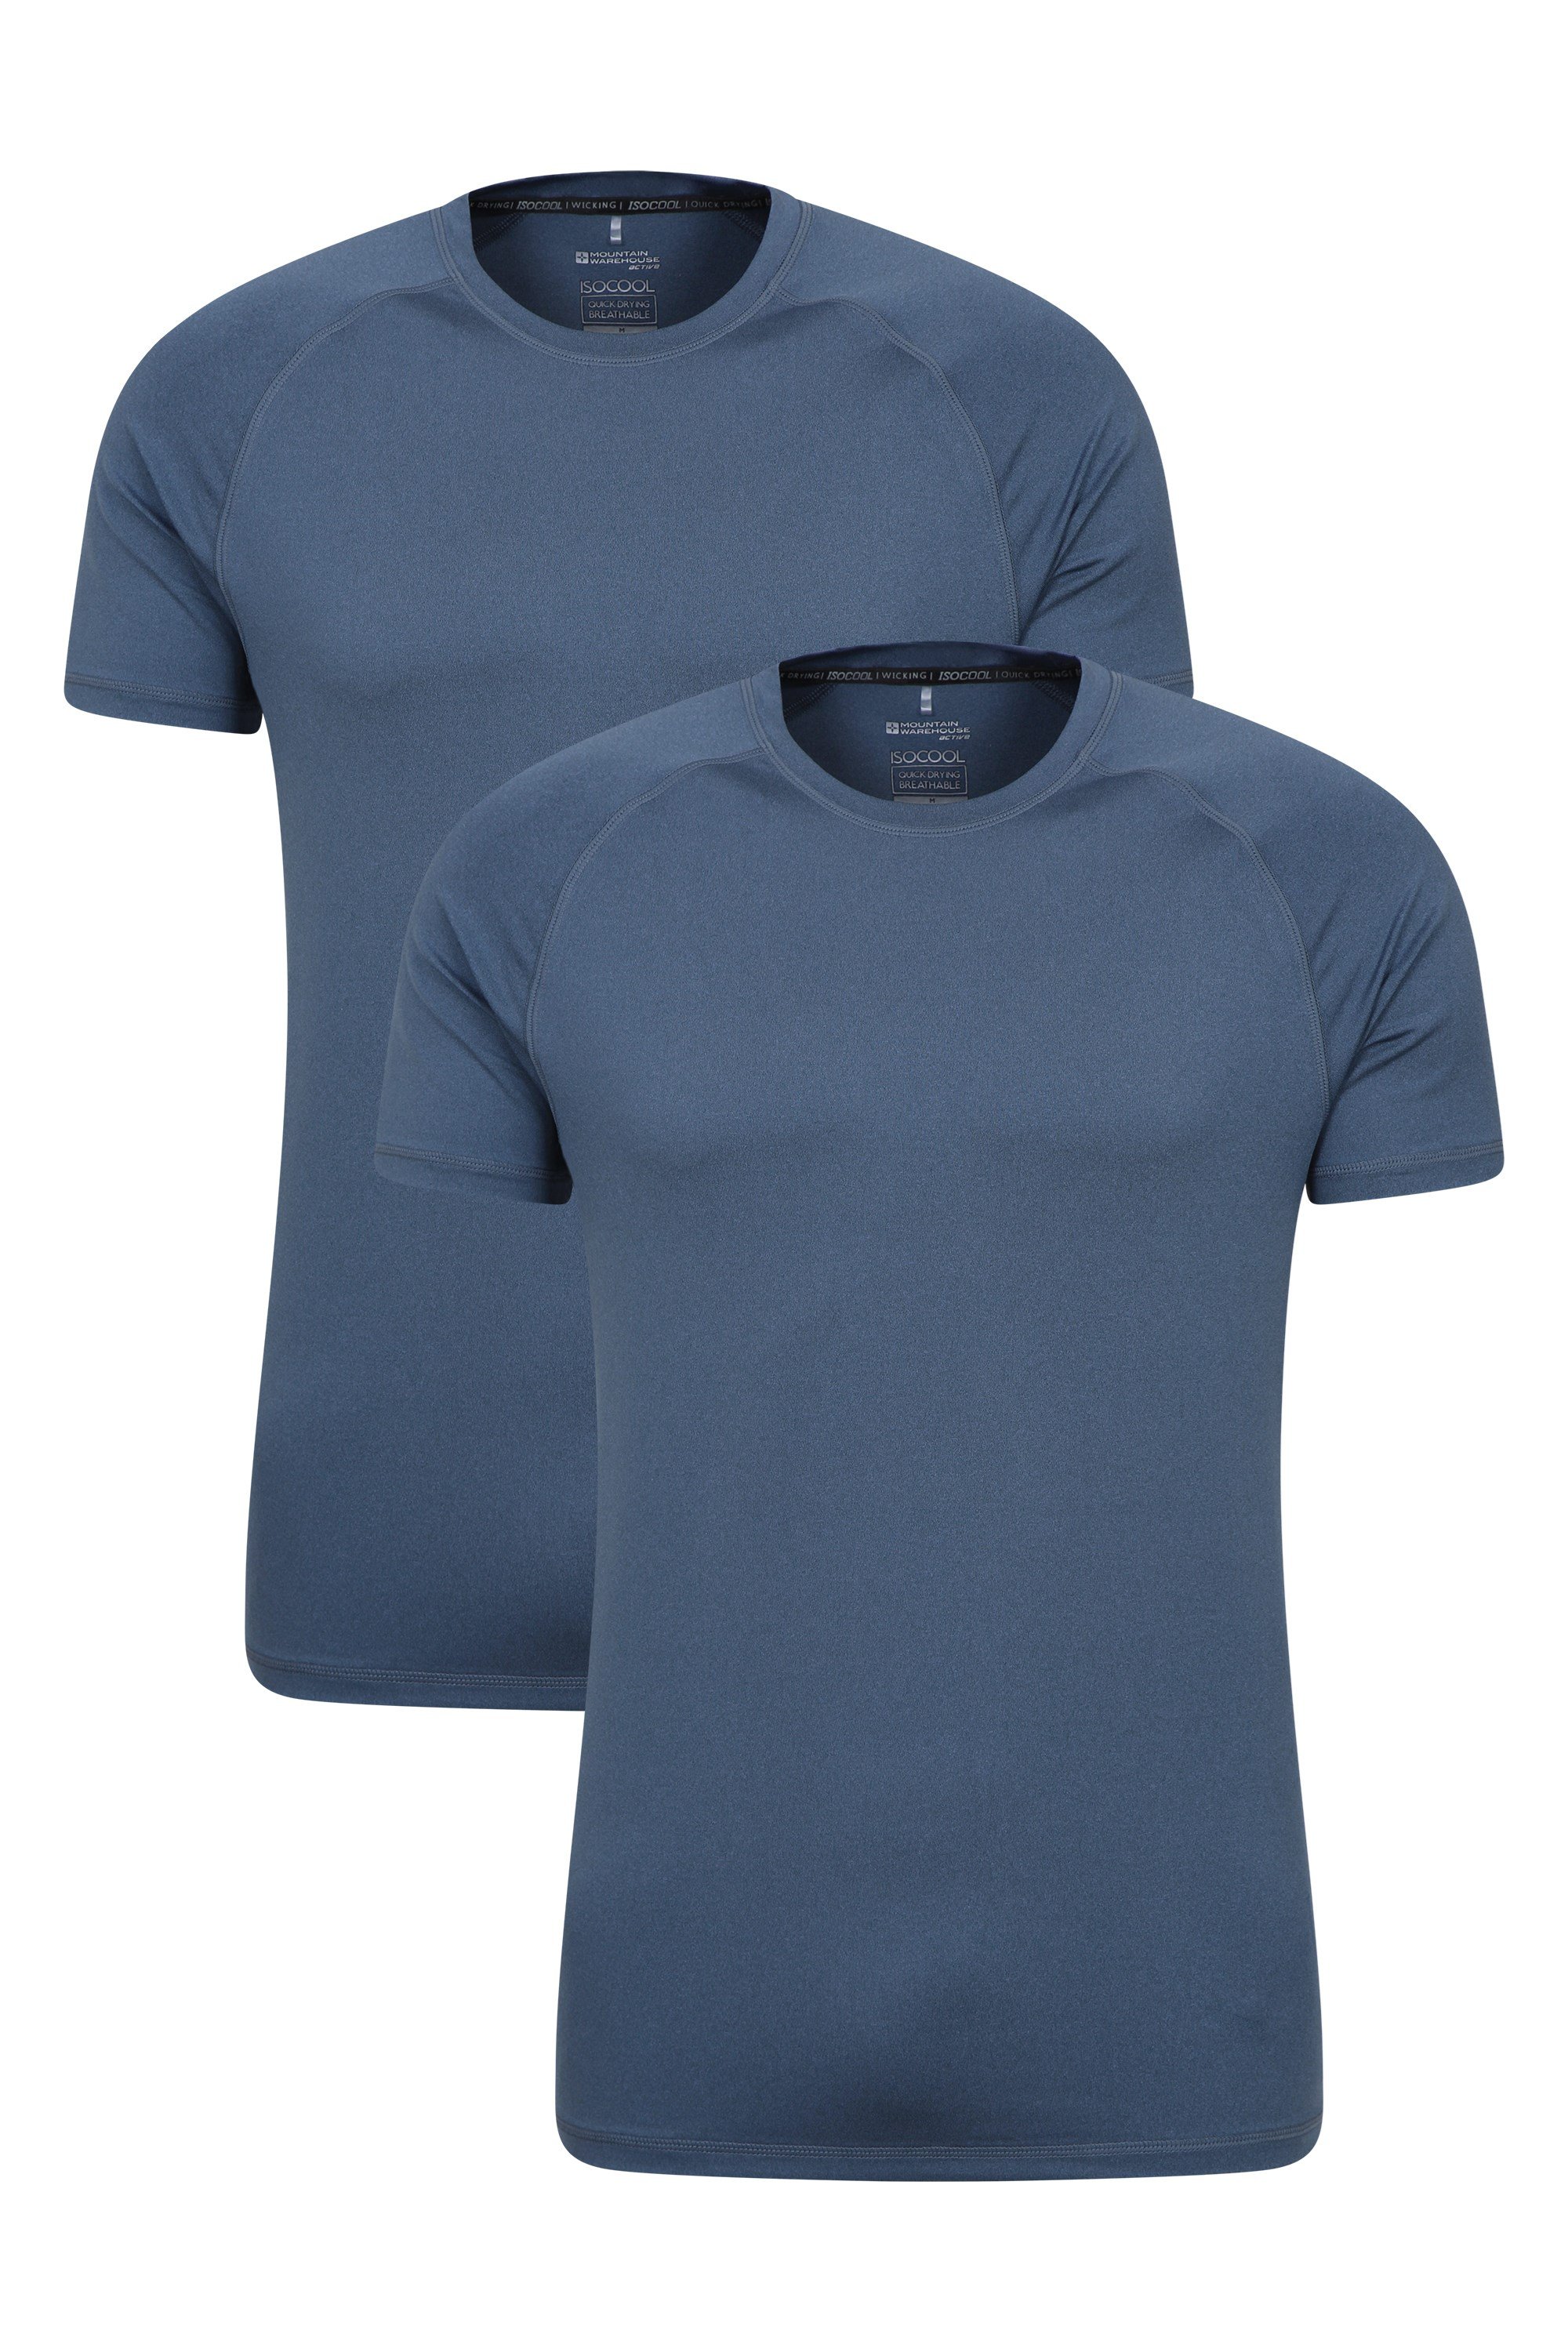 T-Shirt Agra IsoCool Homme - Multipack - Bleu